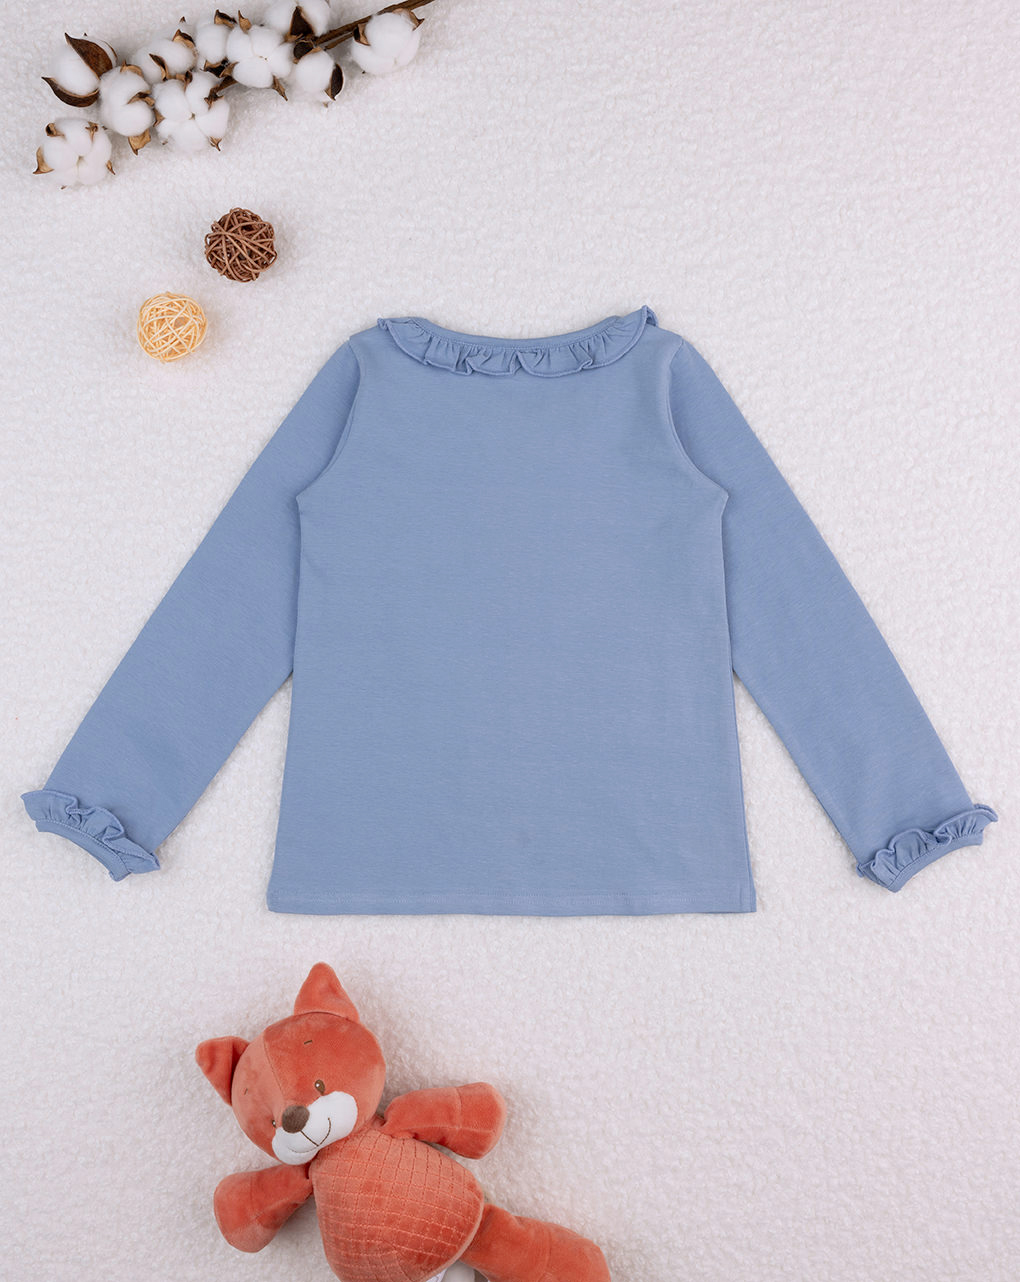 παιδική μπλούζα μπλε με αλεπού για κορίτσι - Prénatal